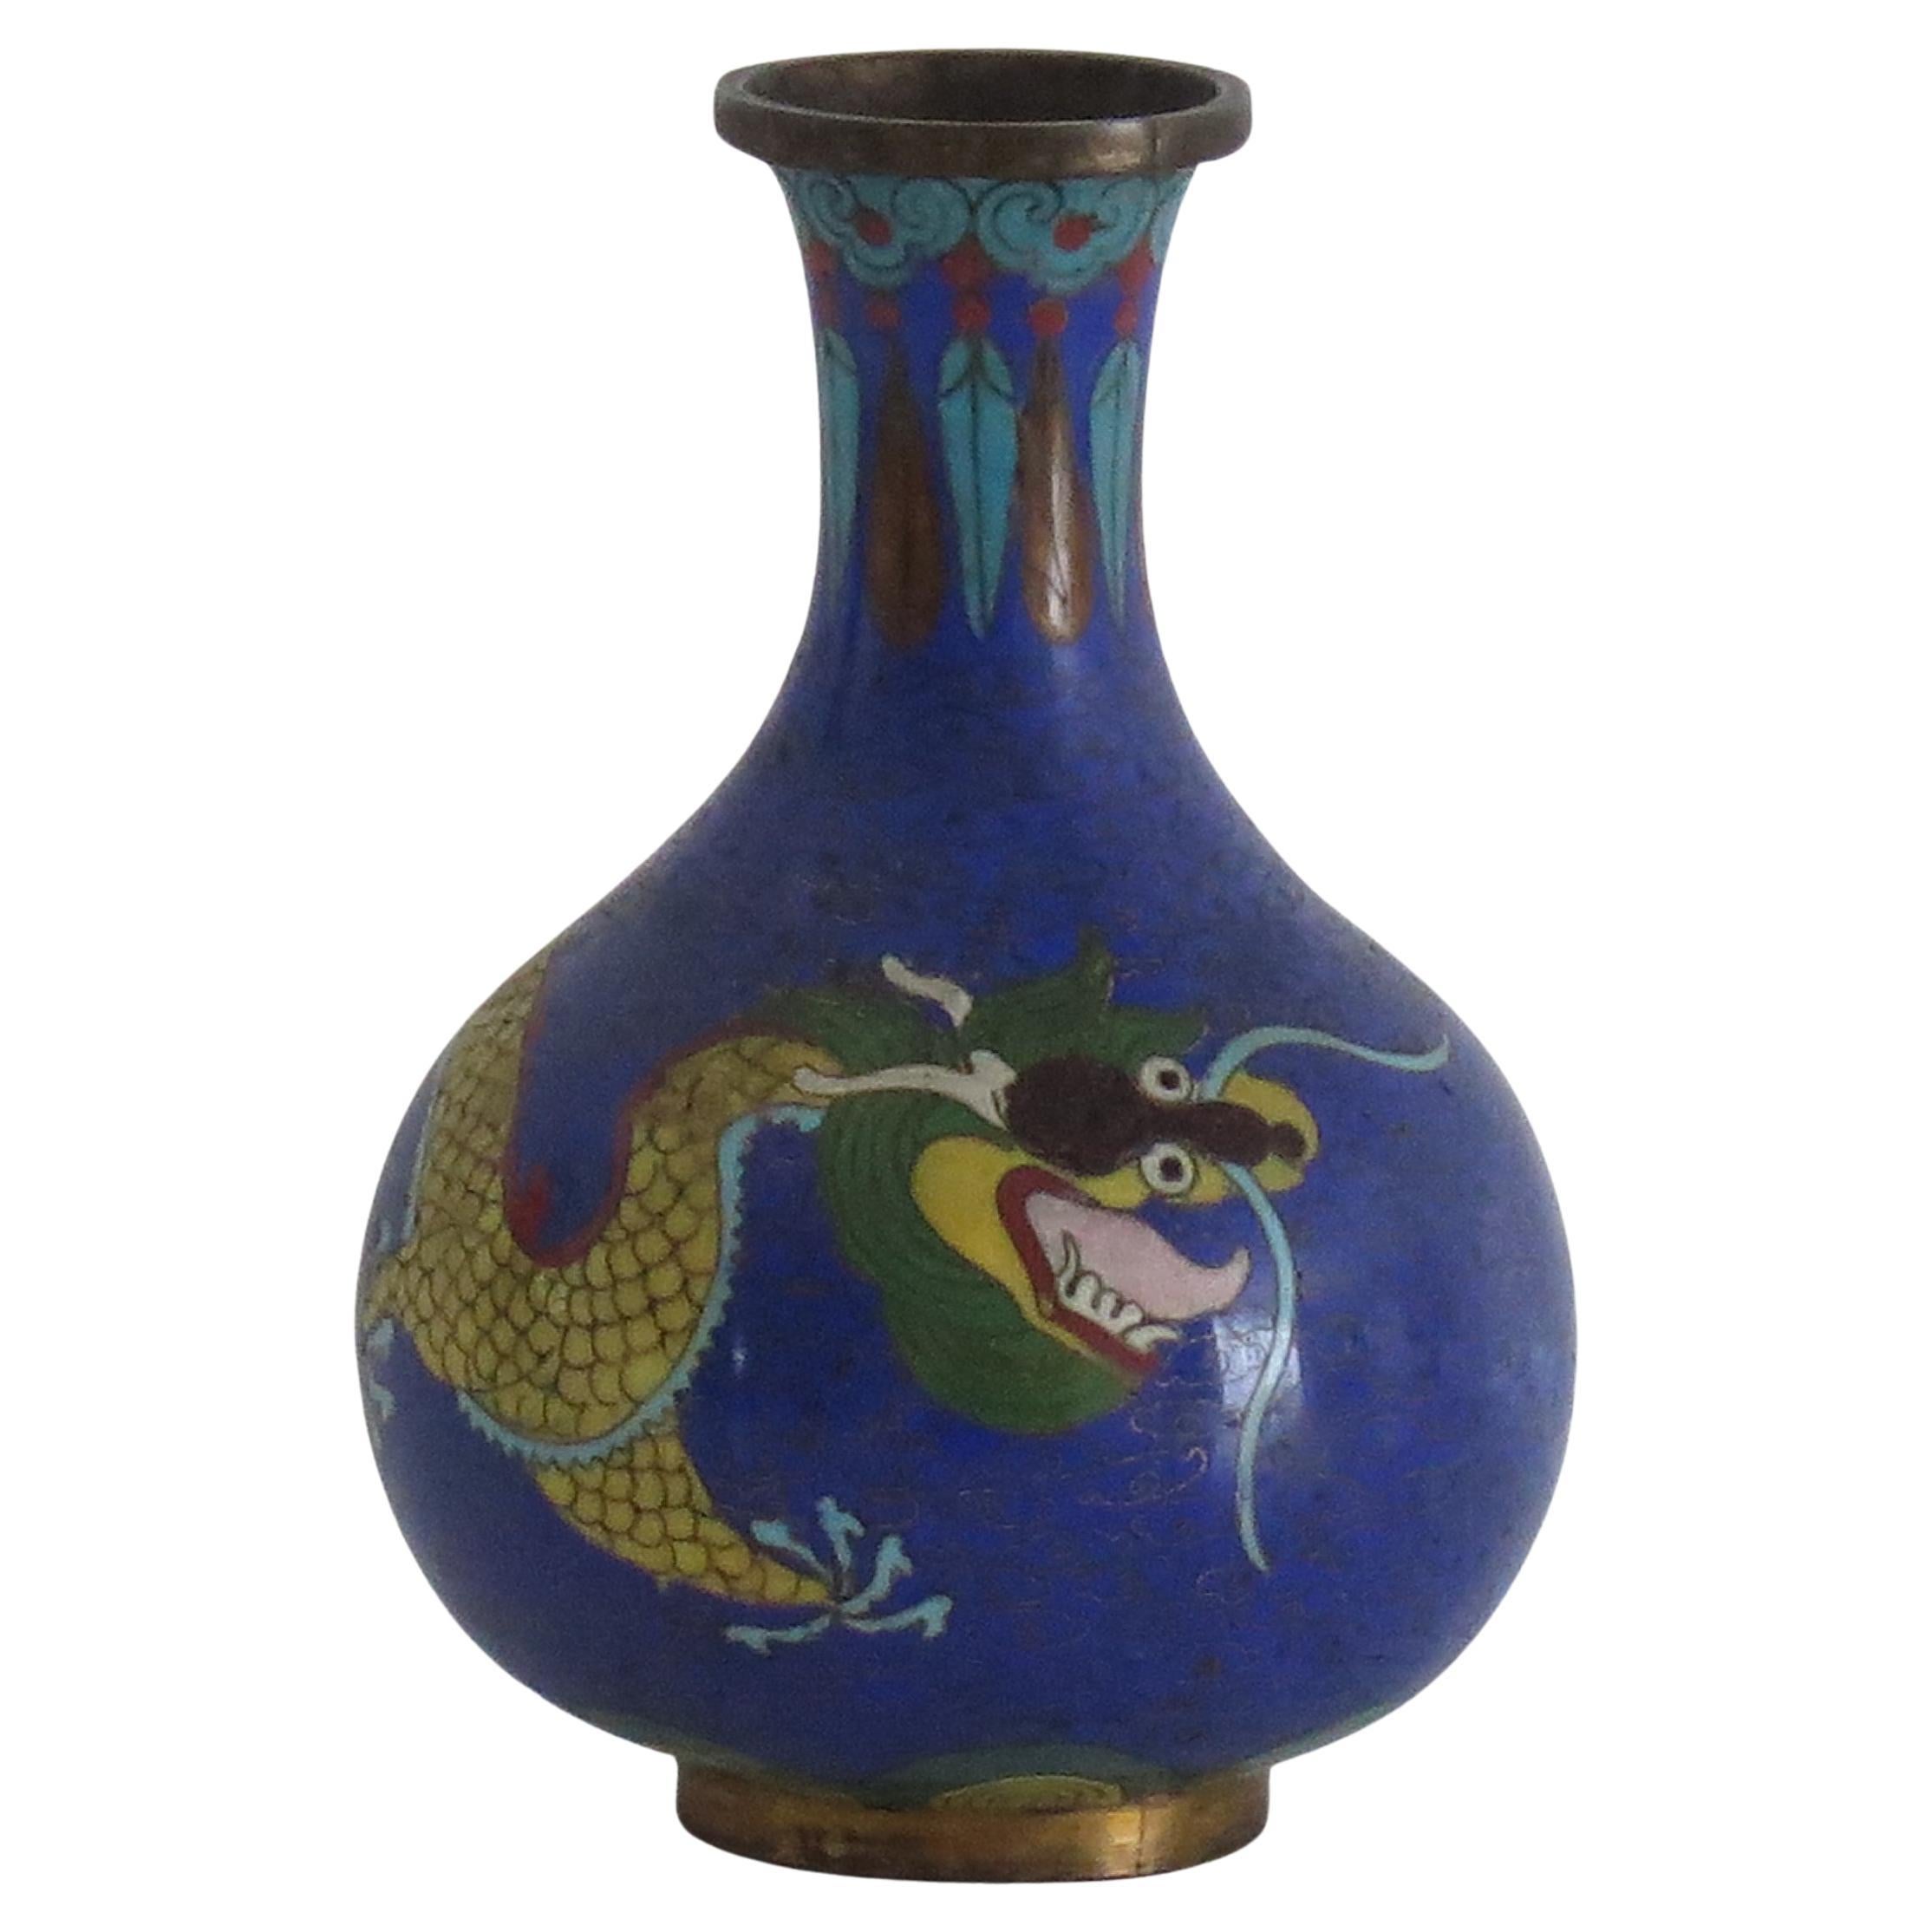 Vase cloisonné chinois du 19e siècle avec dragon chassant la perle, période Qing